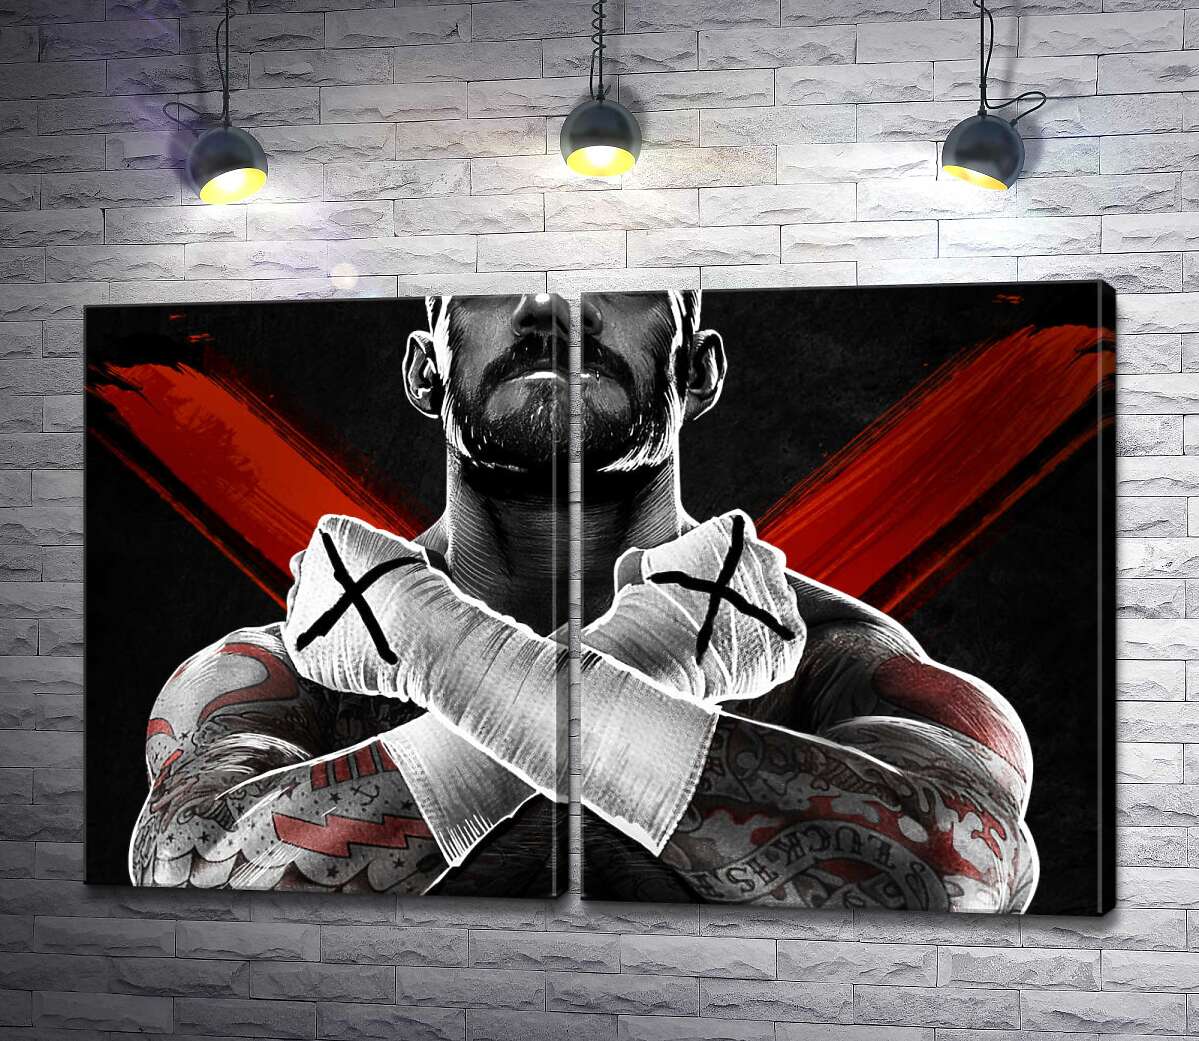 модульна картина Гори м'язів американського реслера СМ Панка (CM Punk)